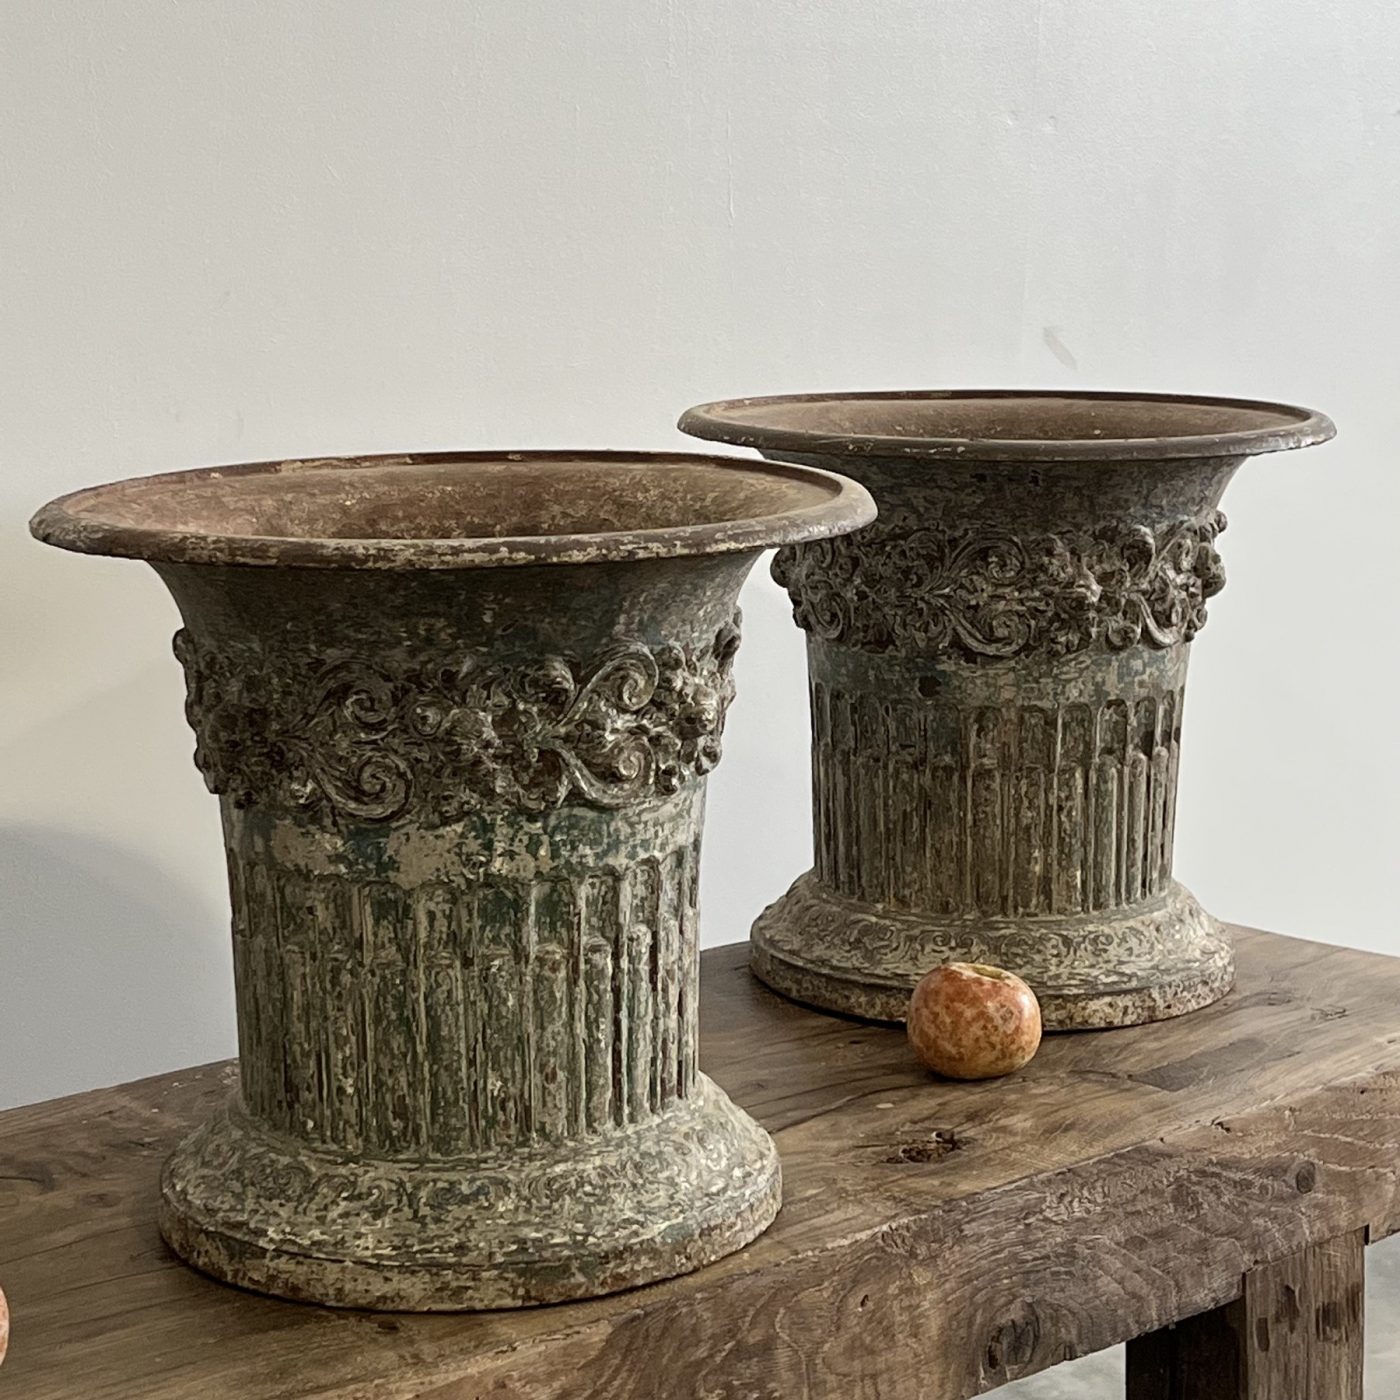 objet-vagabond-garden-urns0006